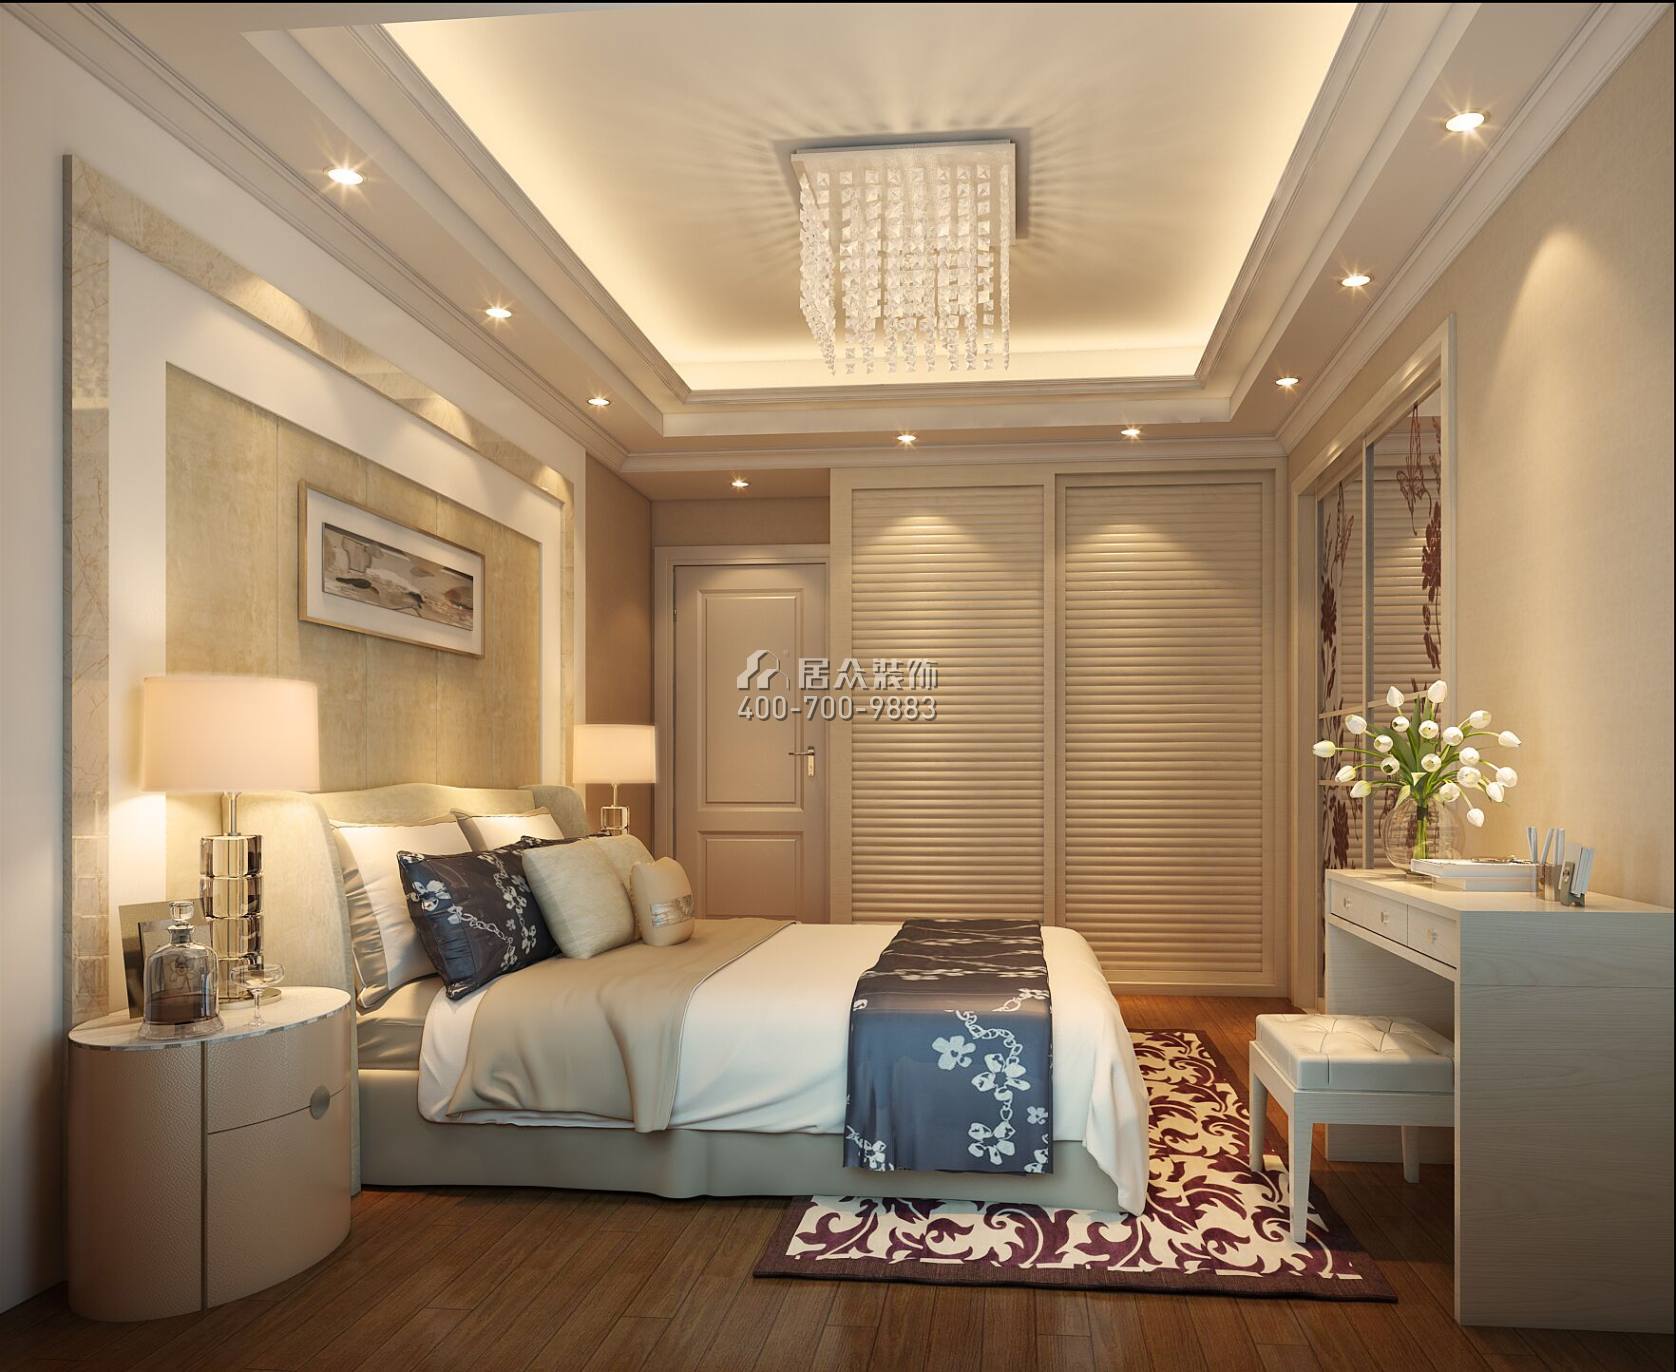 金地鹭湖1号94平方米现代简约风格平层户型卧室装修效果图